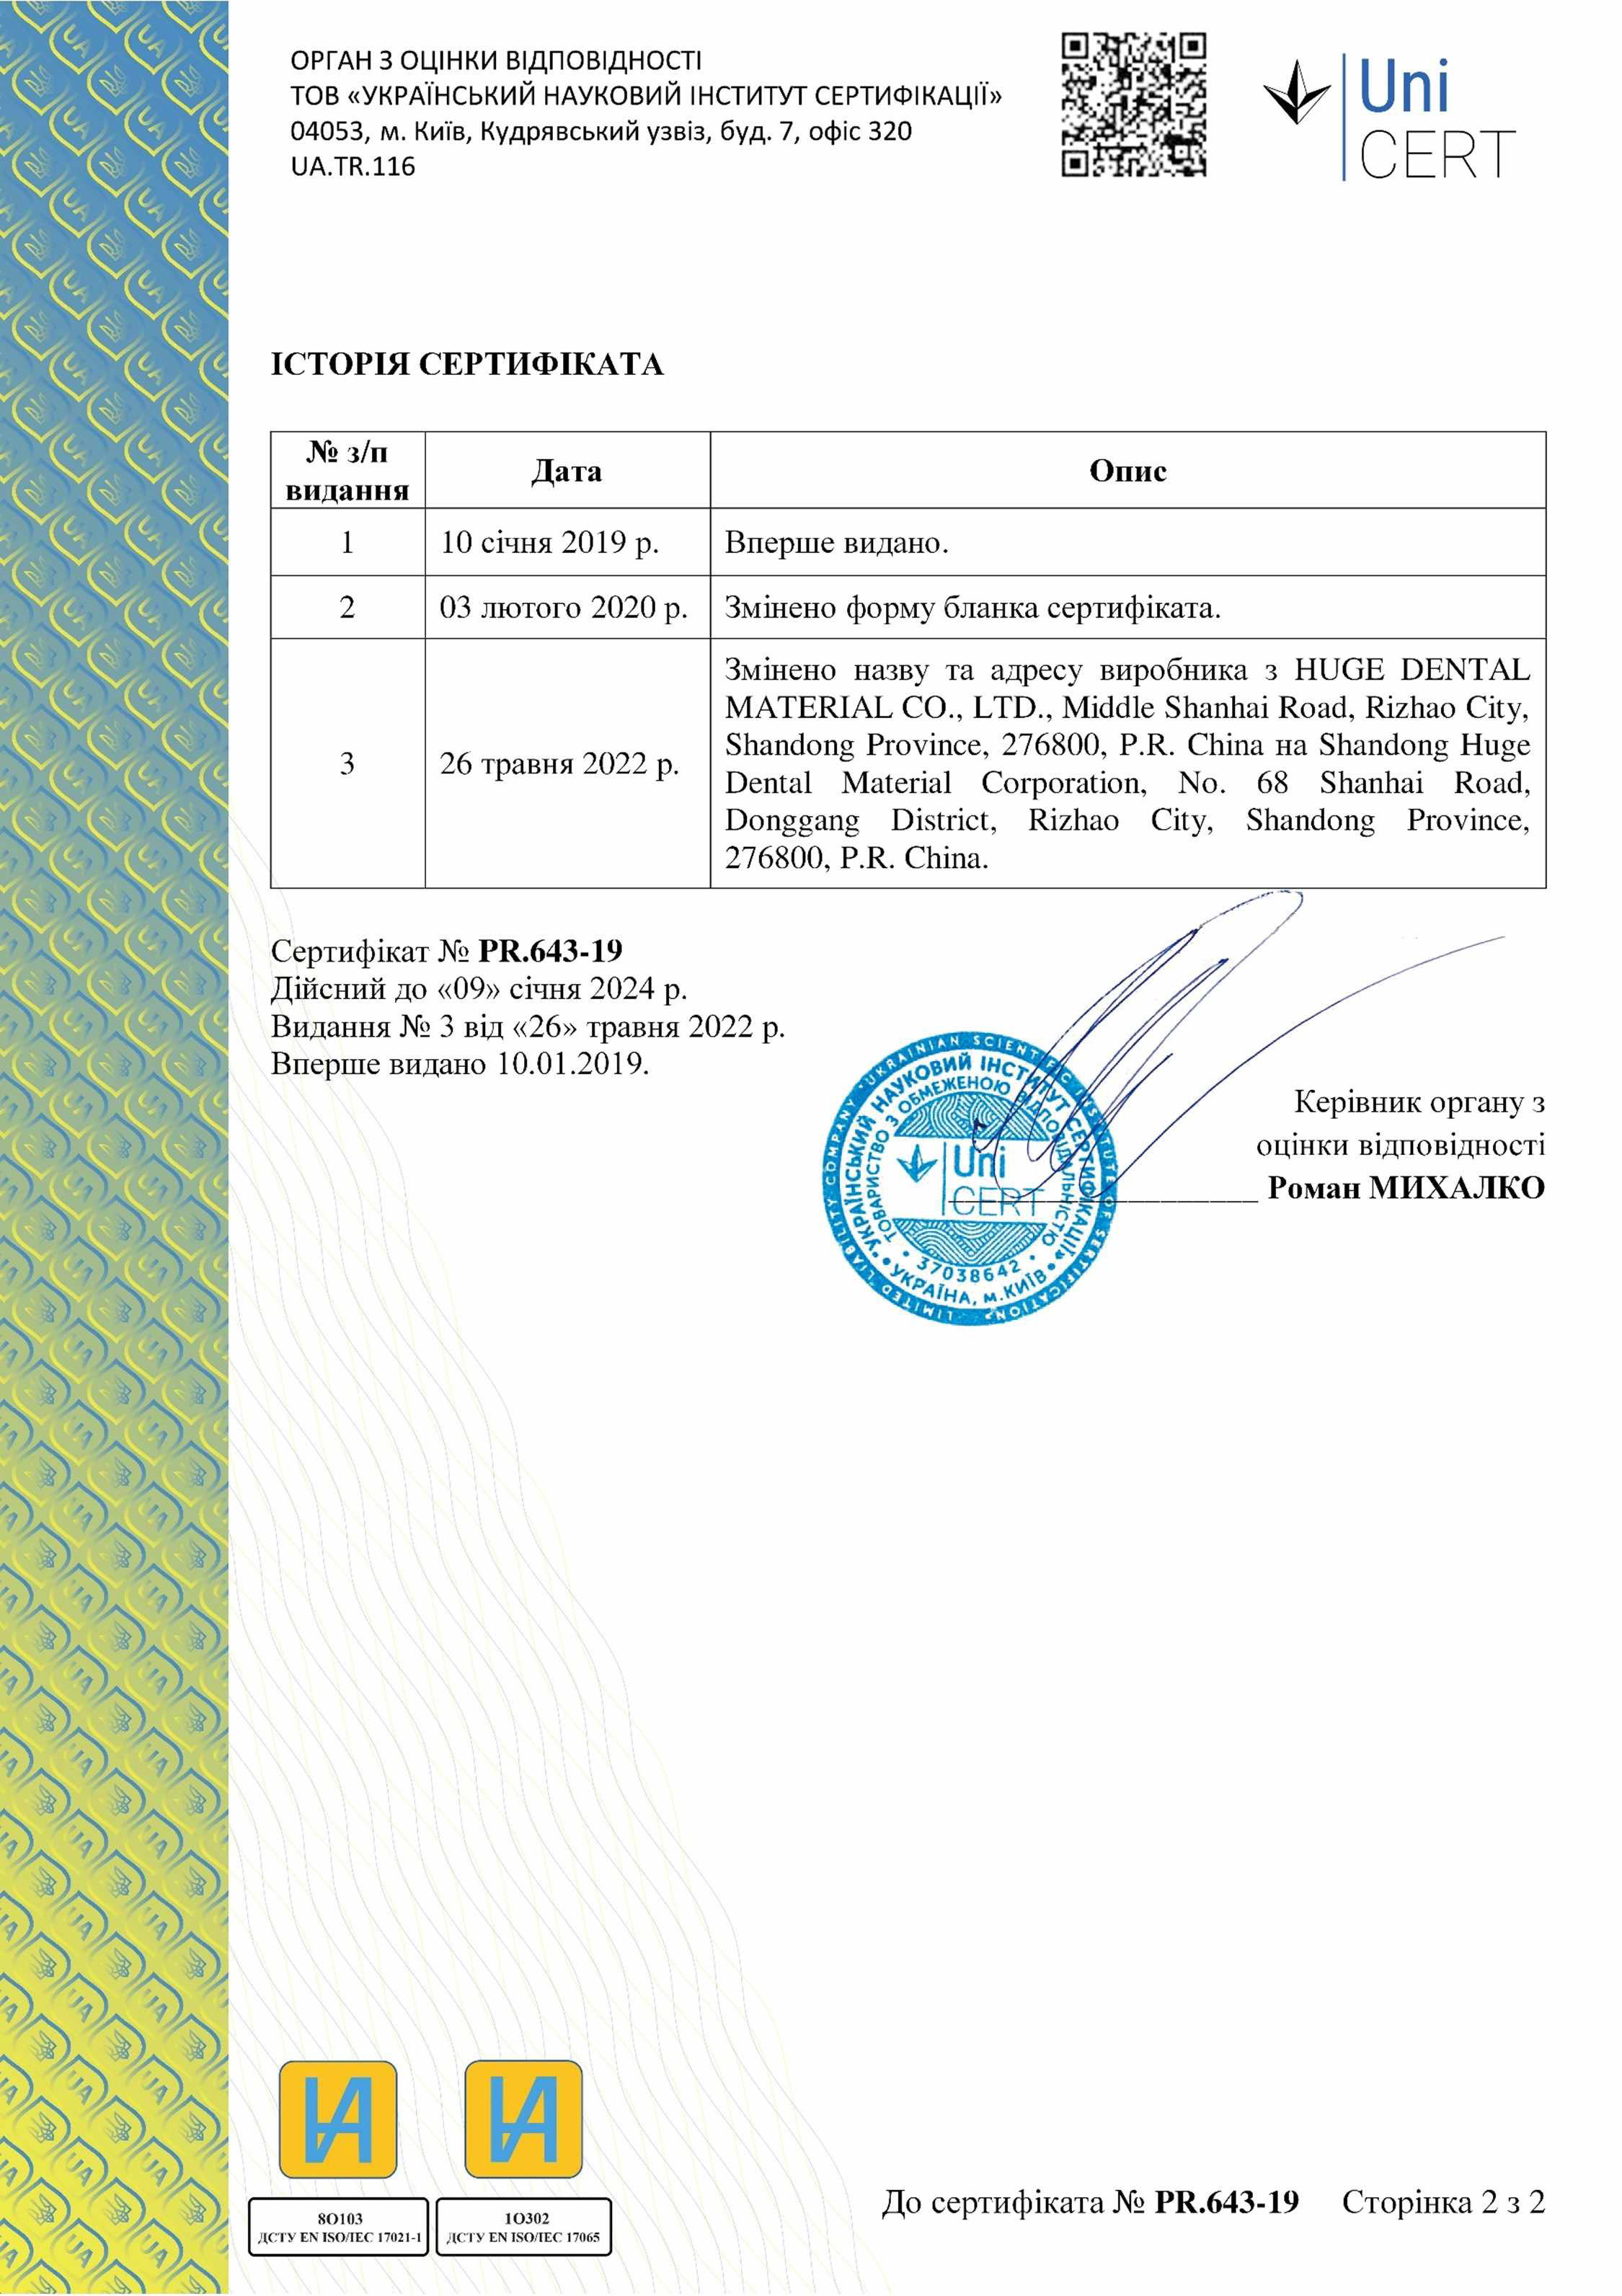 Сертифікат відповідності Uni Cert (2) 